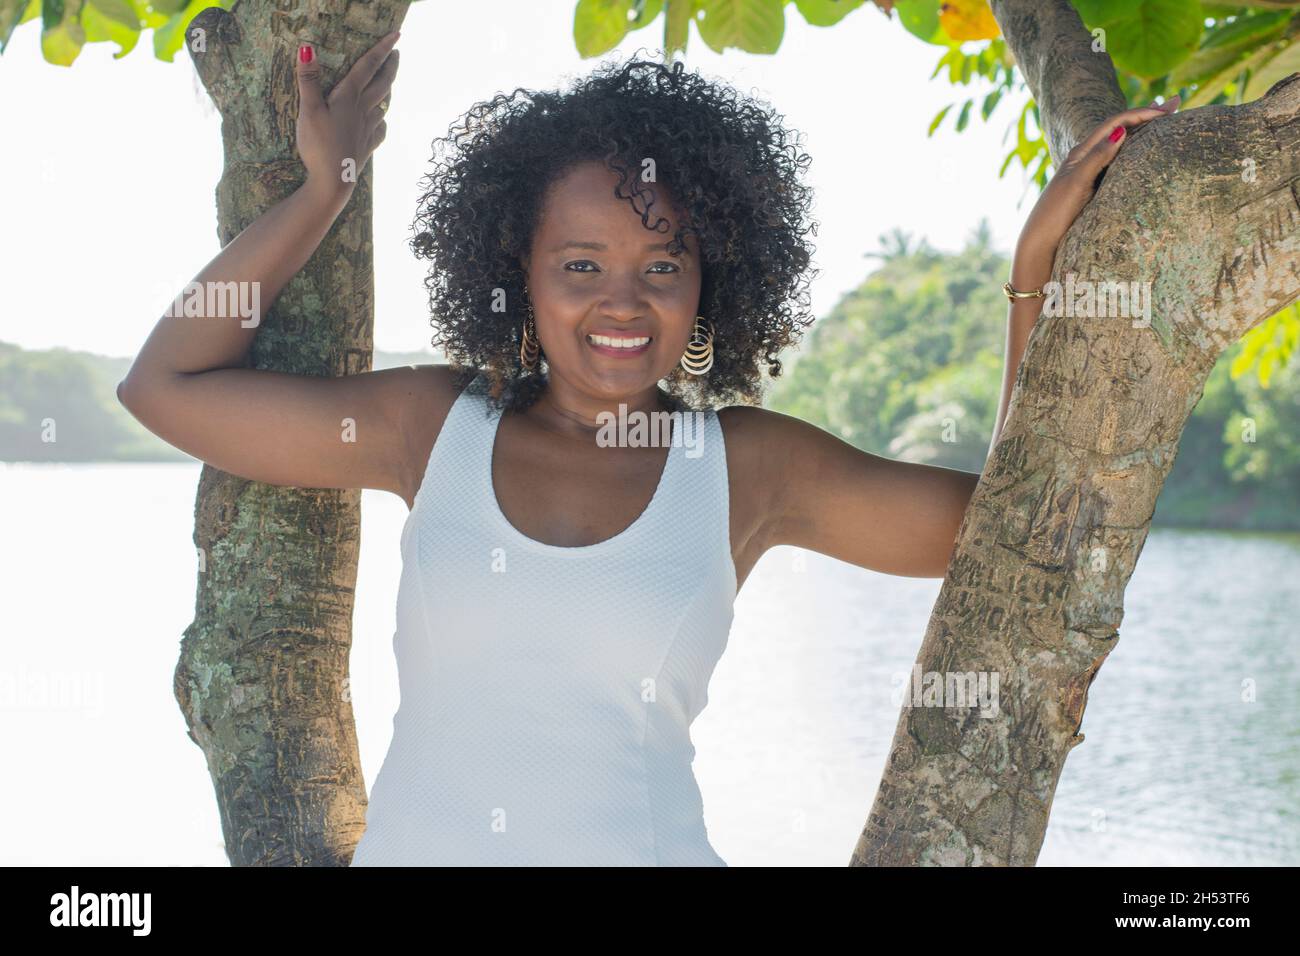 Bela modelo em um vestigdo branco sorrindo e olhando para a câmera. Ao fundo, árvores, plantas, flores e o rio na paisagem. Salvador, Bahía, Brasil. Foto de stock